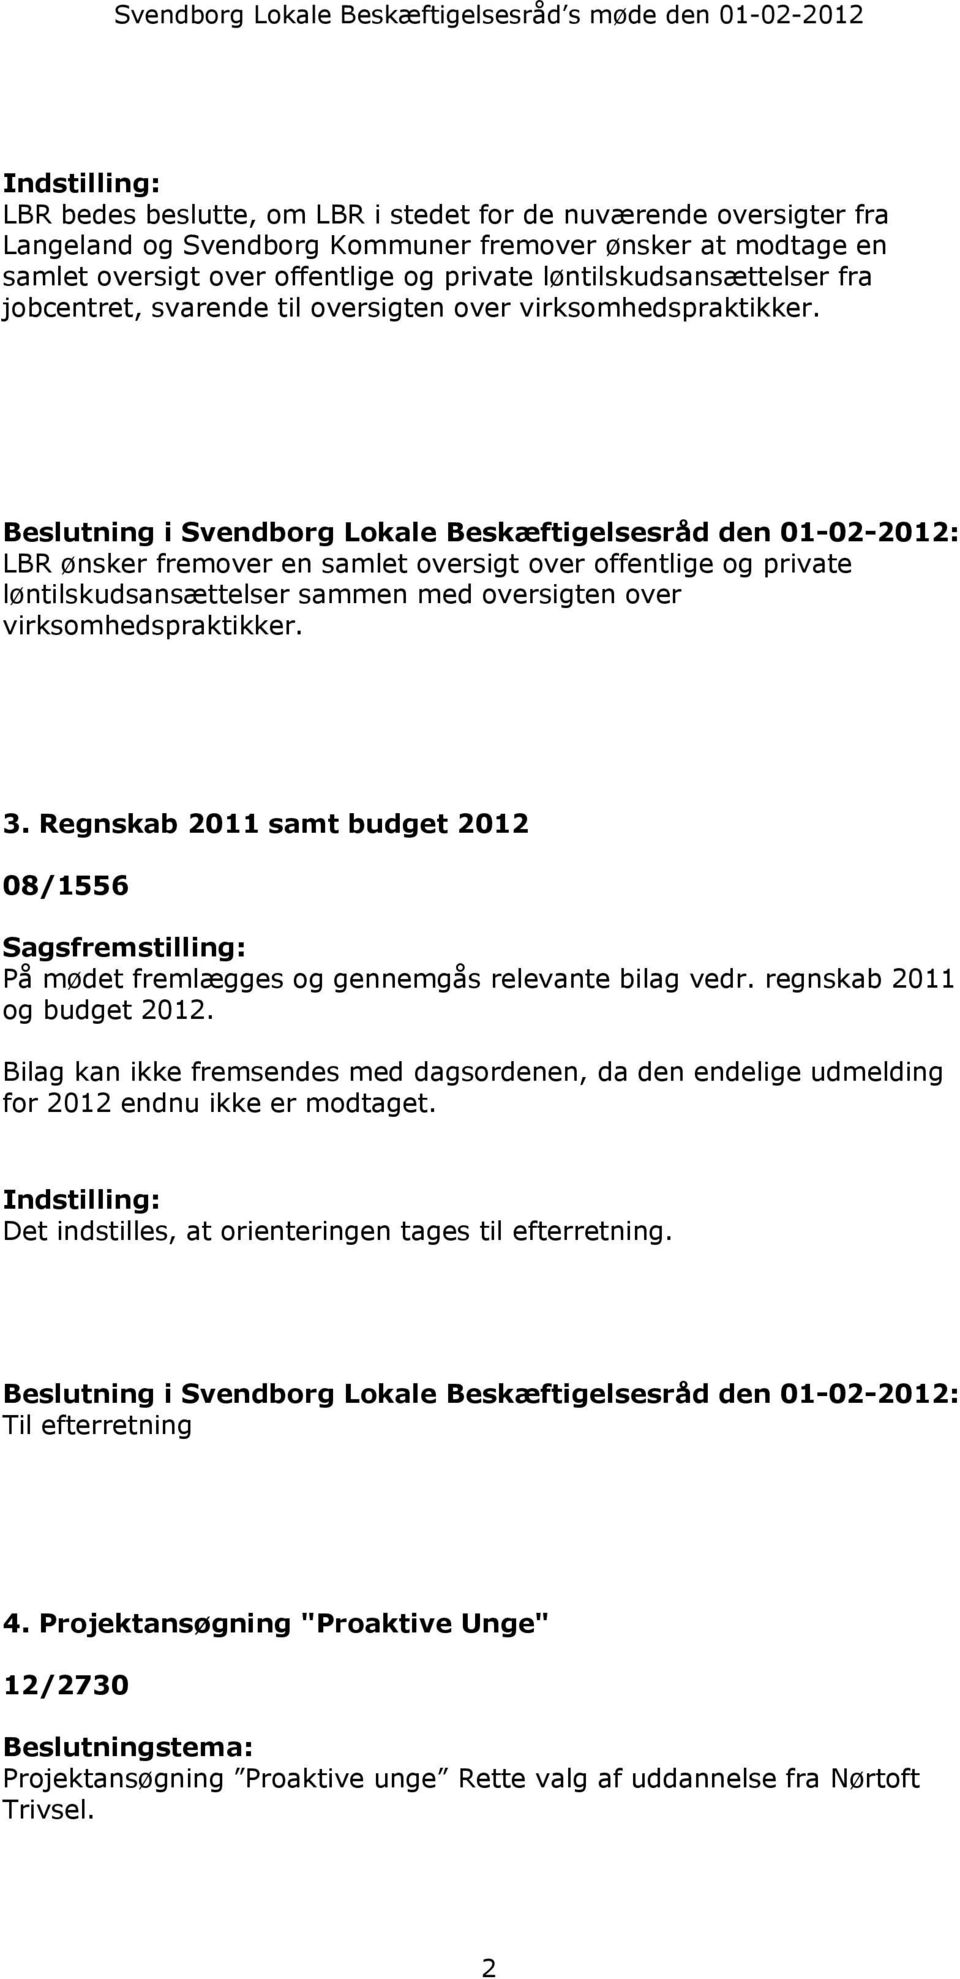 Beslutning i Svendborg Lokale Beskæftigelsesråd den 01-02-2012: LBR ønsker fremover en samlet oversigt over offentlige og private løntilskudsansættelser sammen med oversigten over